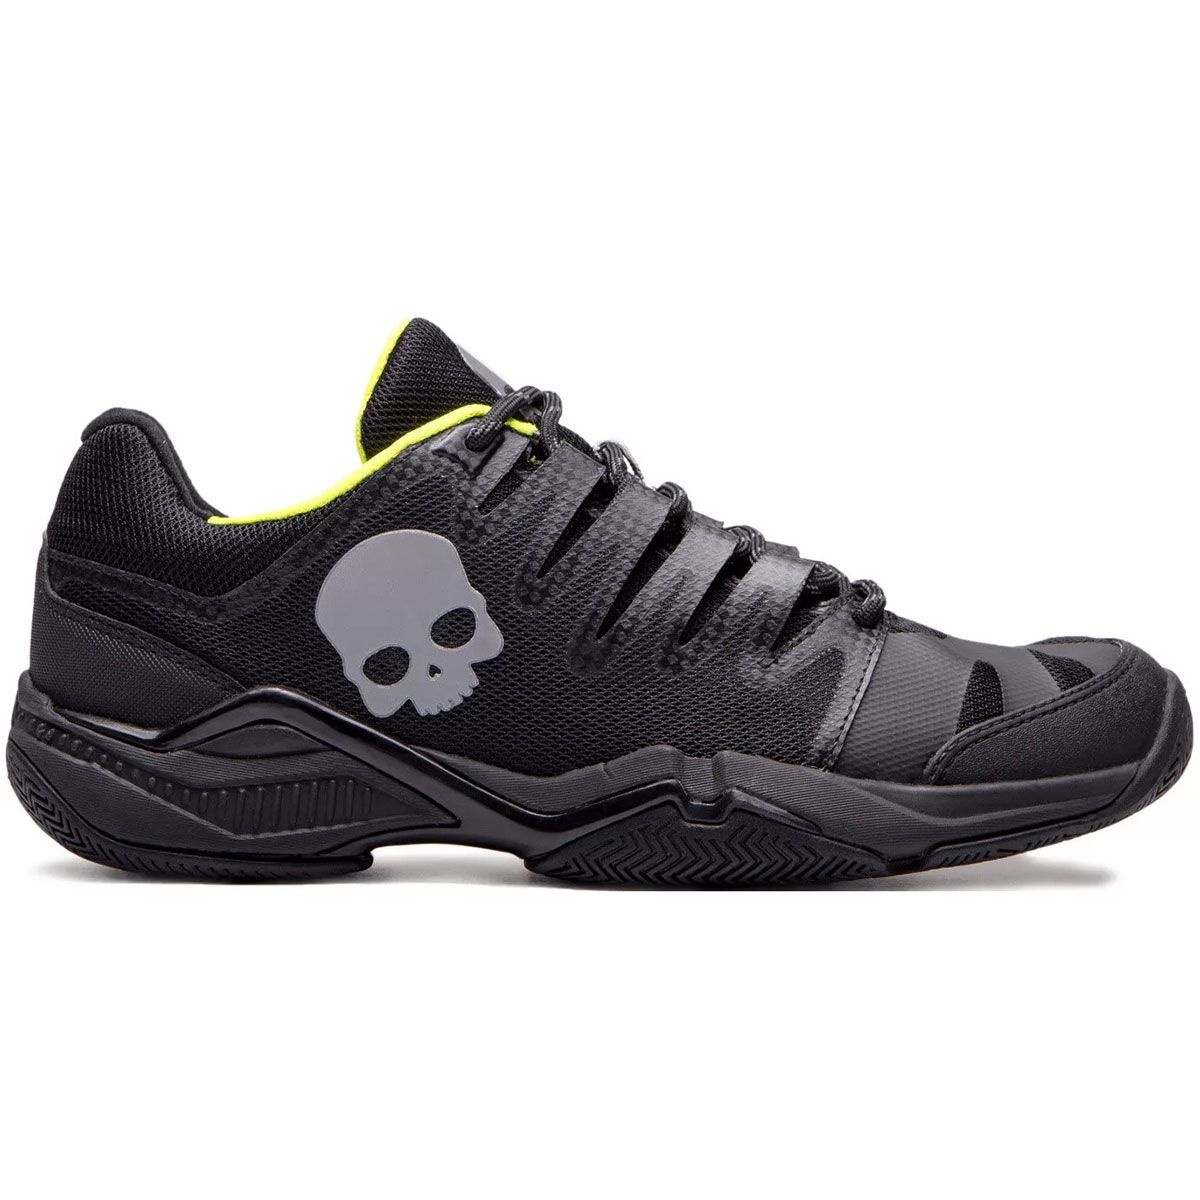 Hydrogen Unisex Tennis Shoes T03014-D56